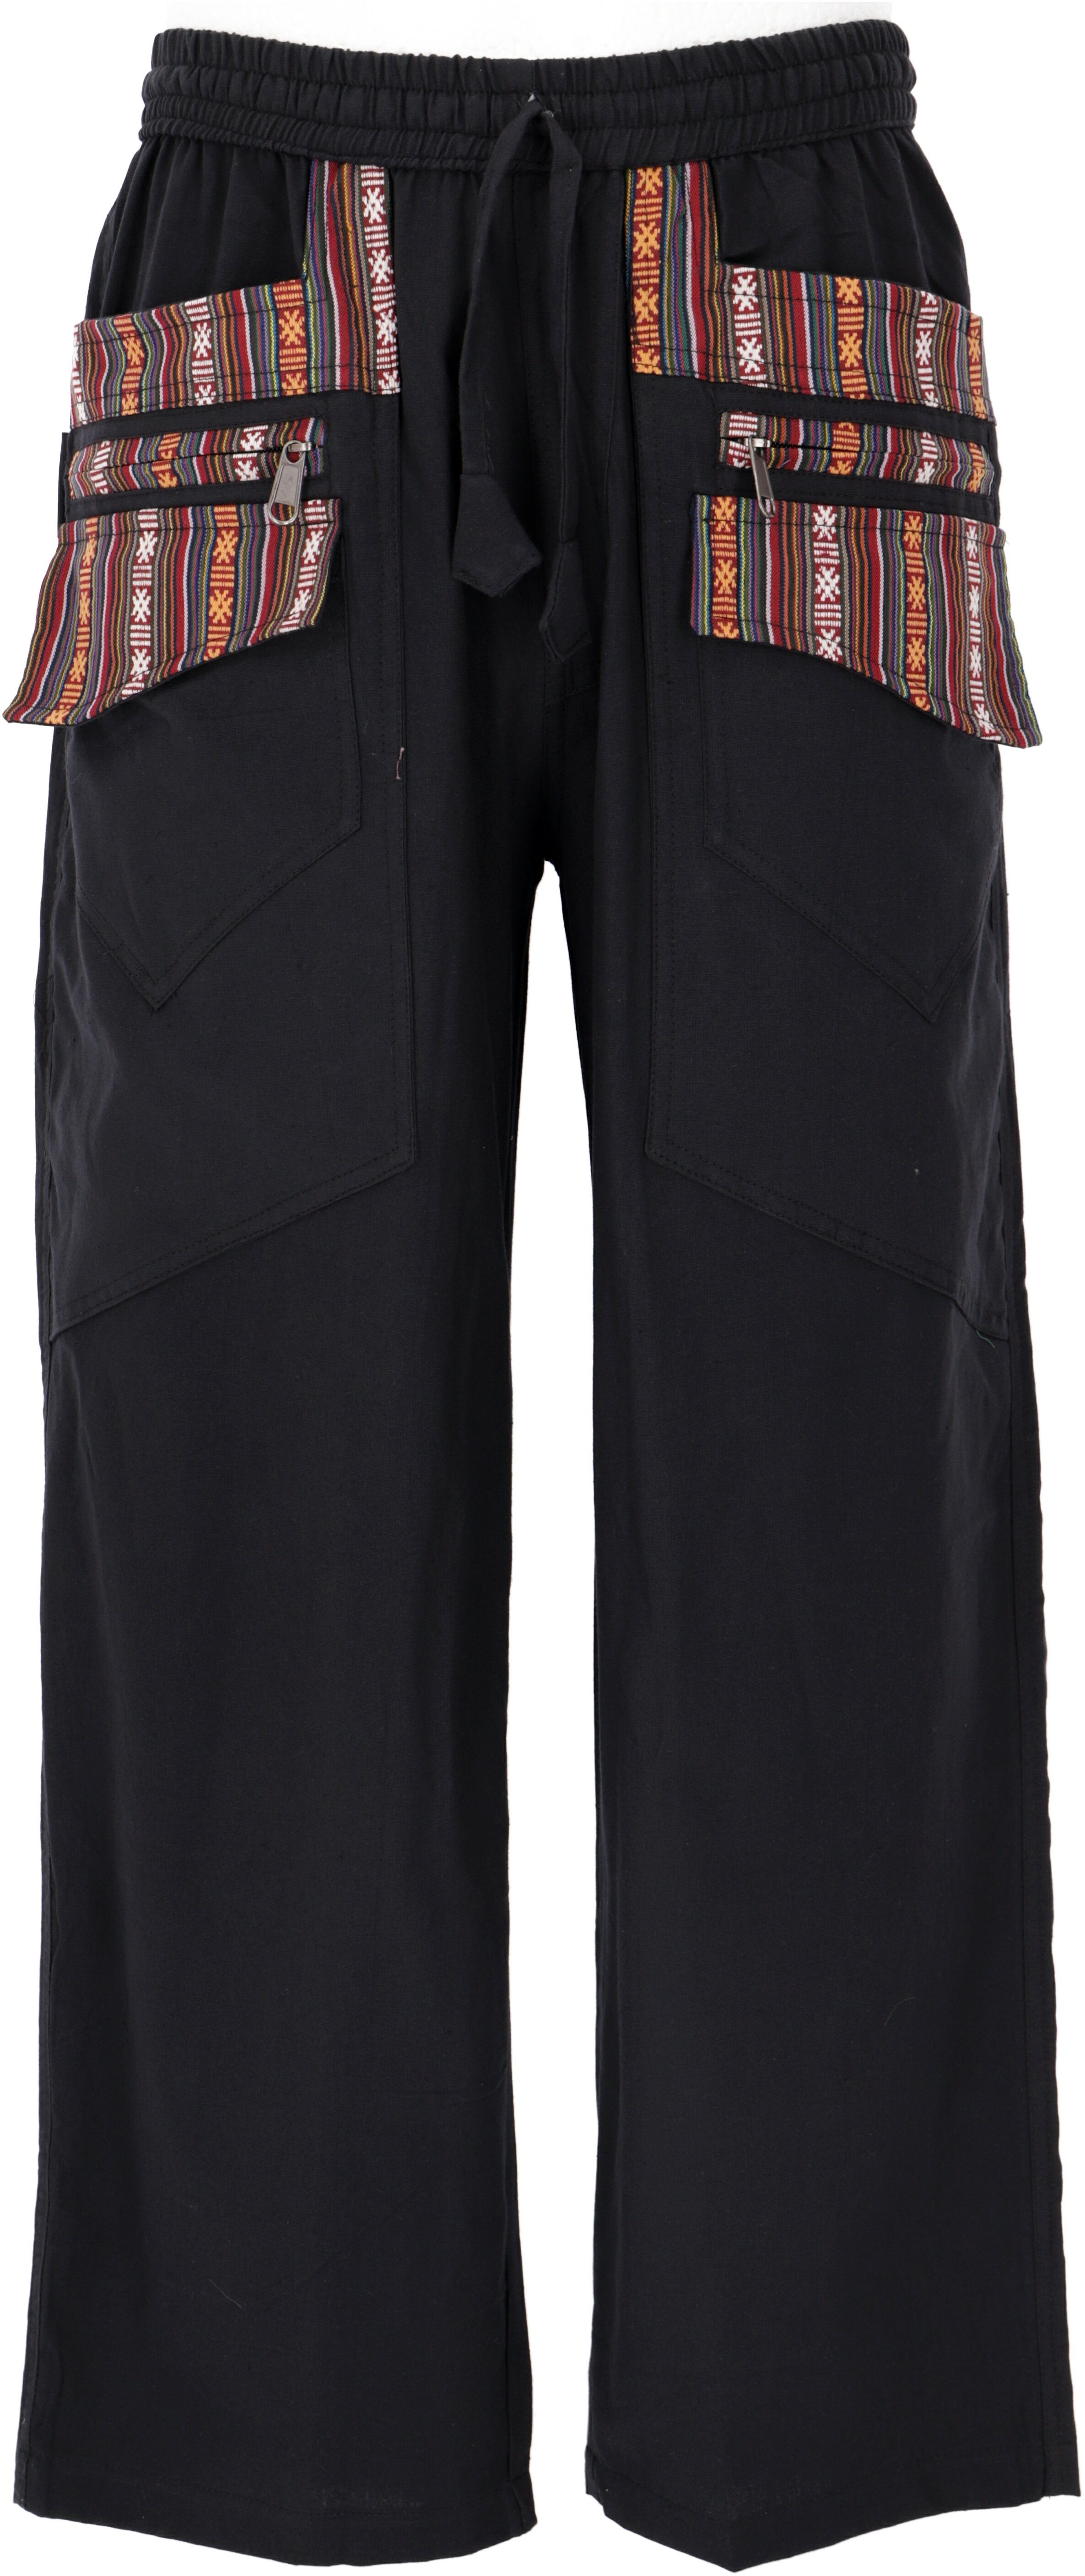 Guru-Shop Relaxhose Yogahose mit aufgesetzten Taschen, bequeme.. Hippie, Ethno Style, alternative Bekleidung schwarz